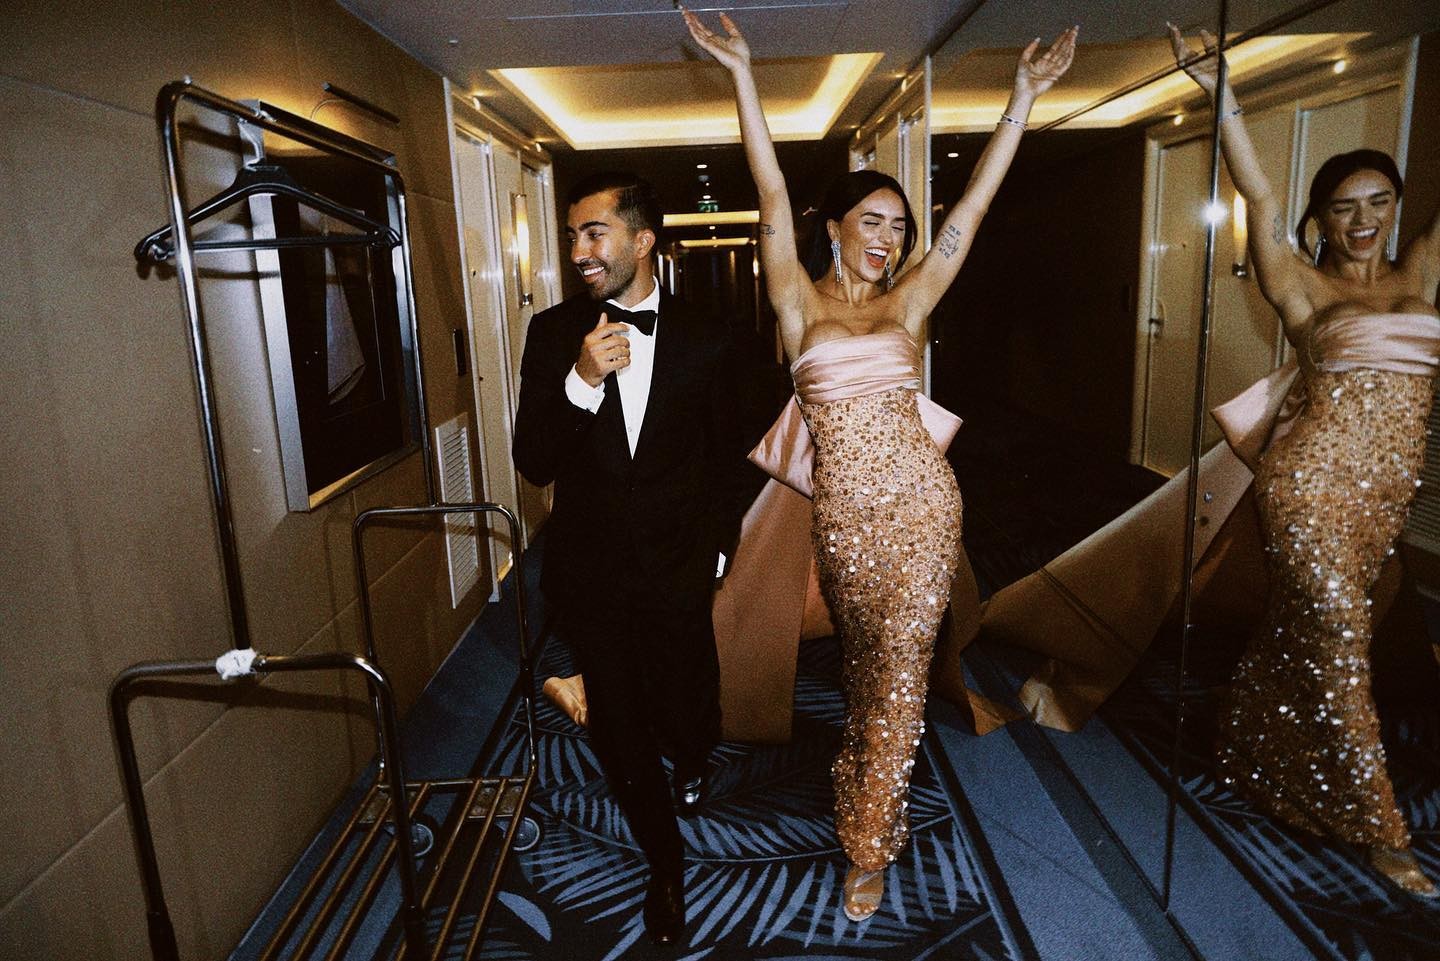 Rafa Kalimann encanta ao abrir novo álbum de fotos em Cannes (Foto: Reprodução / Instagram)